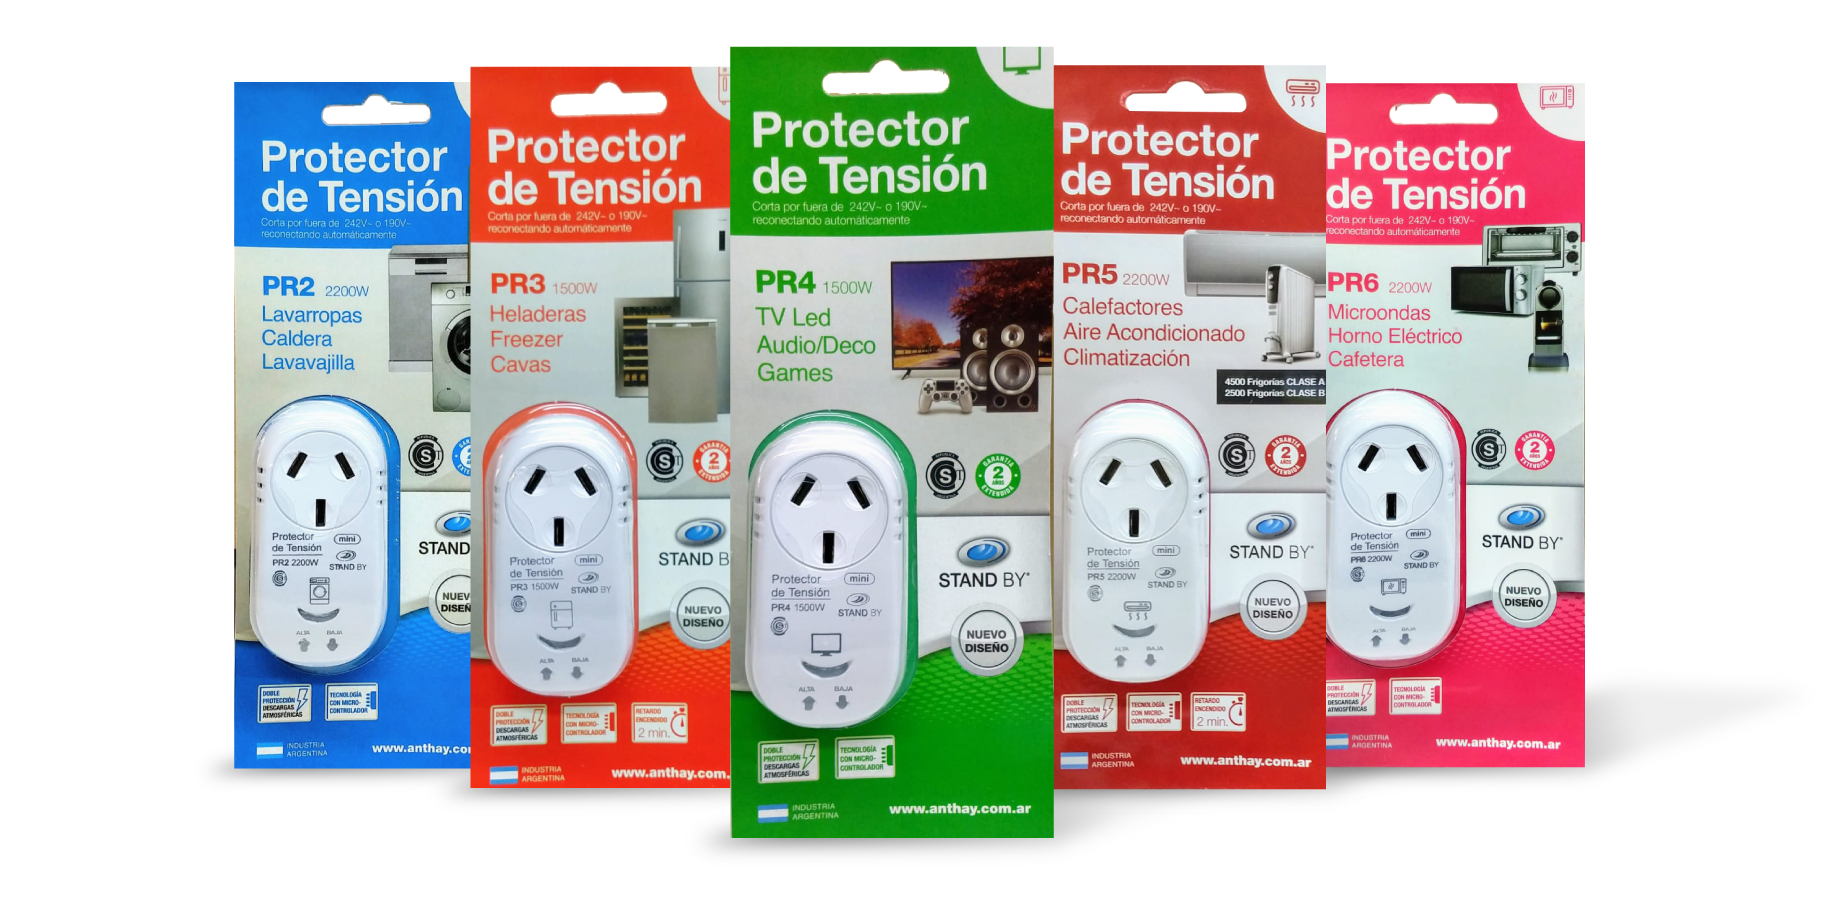 Protector De Tension LIGHT HOUSE PR6MINI (Microondas, Horno Electrico,  Cafetera)